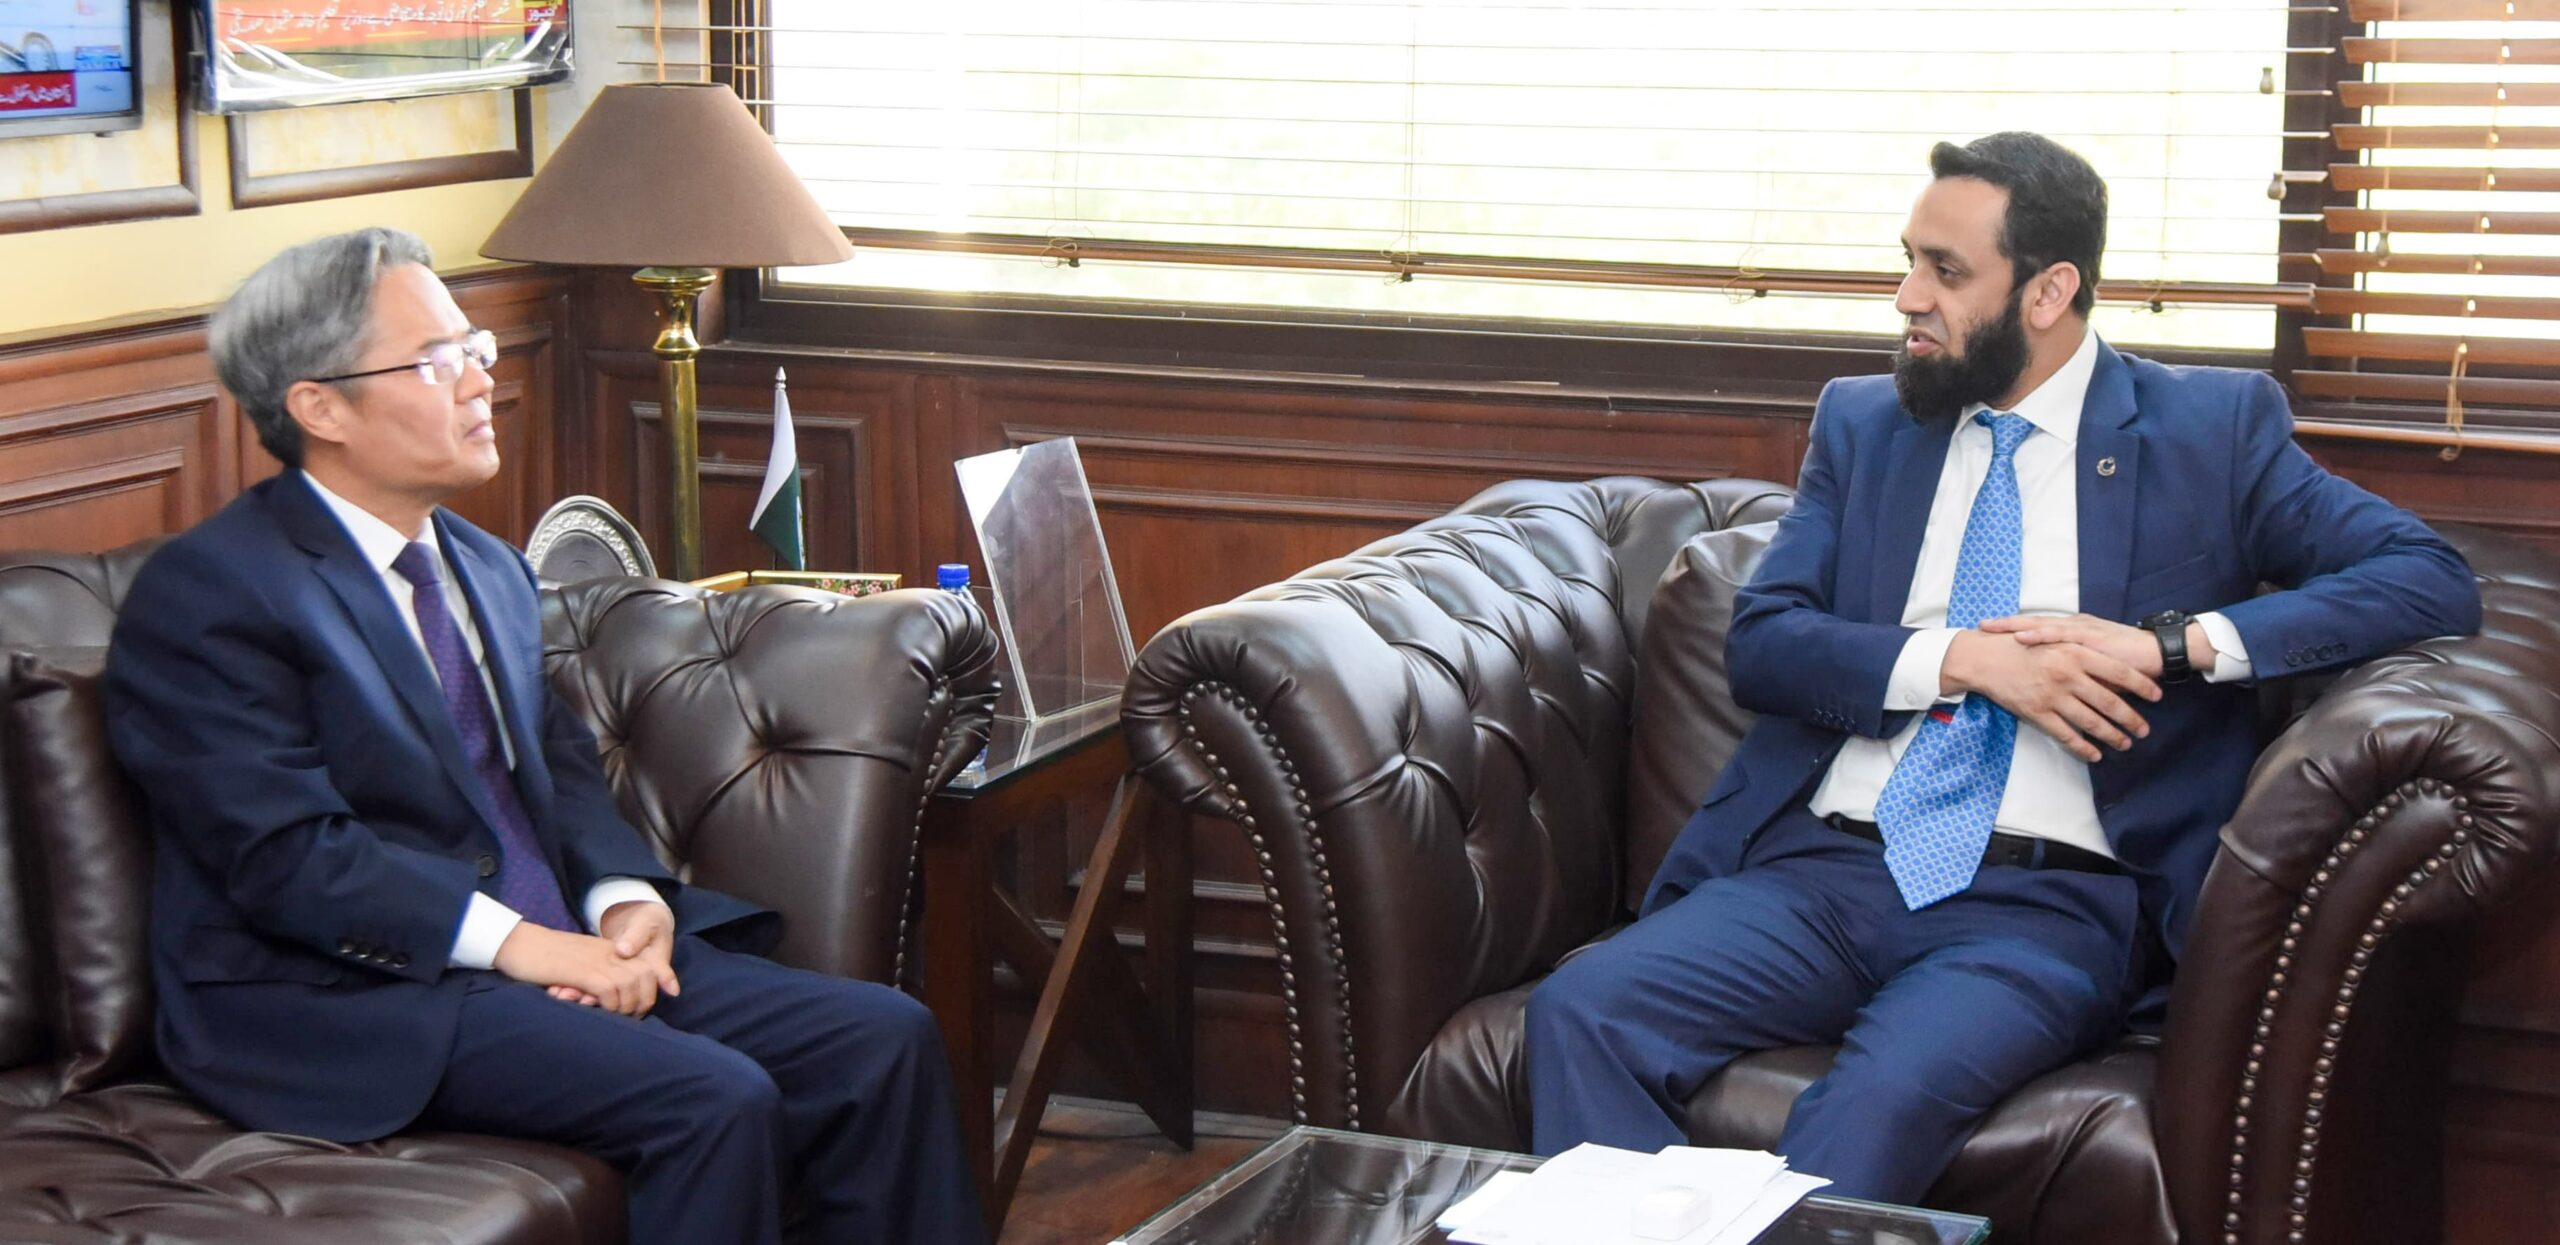 Chinese Ambassador to Pakistan Jiang Zaidong met Federal Minister Ataullah Tarar